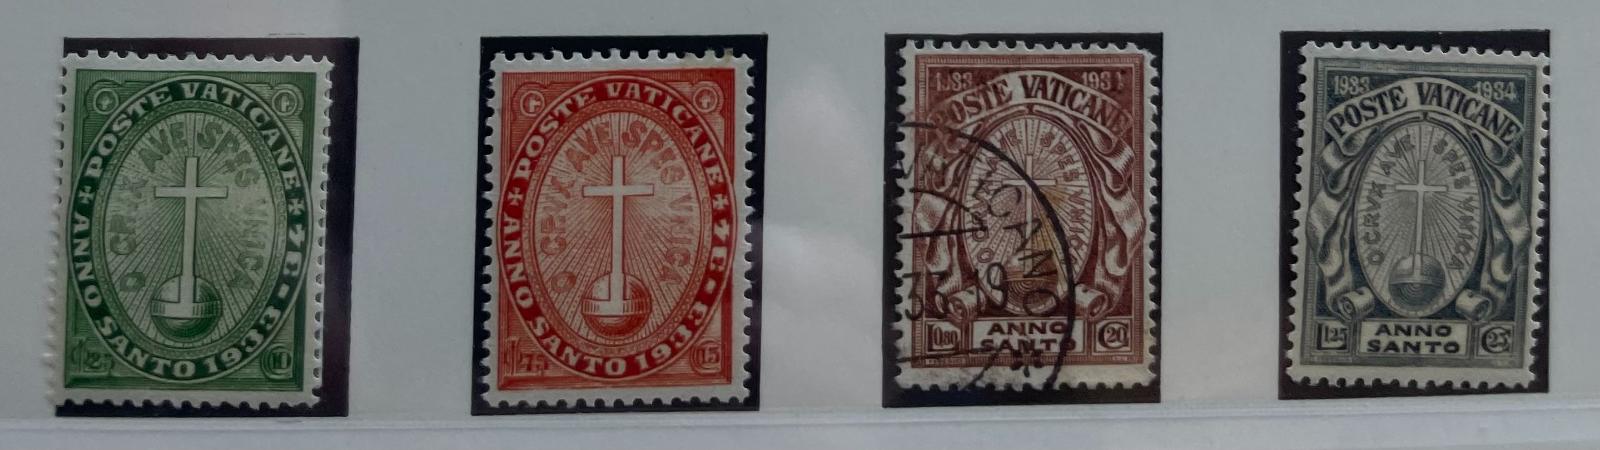 Vatikán 1933 Mi.17-20 kompletnej série - Známky